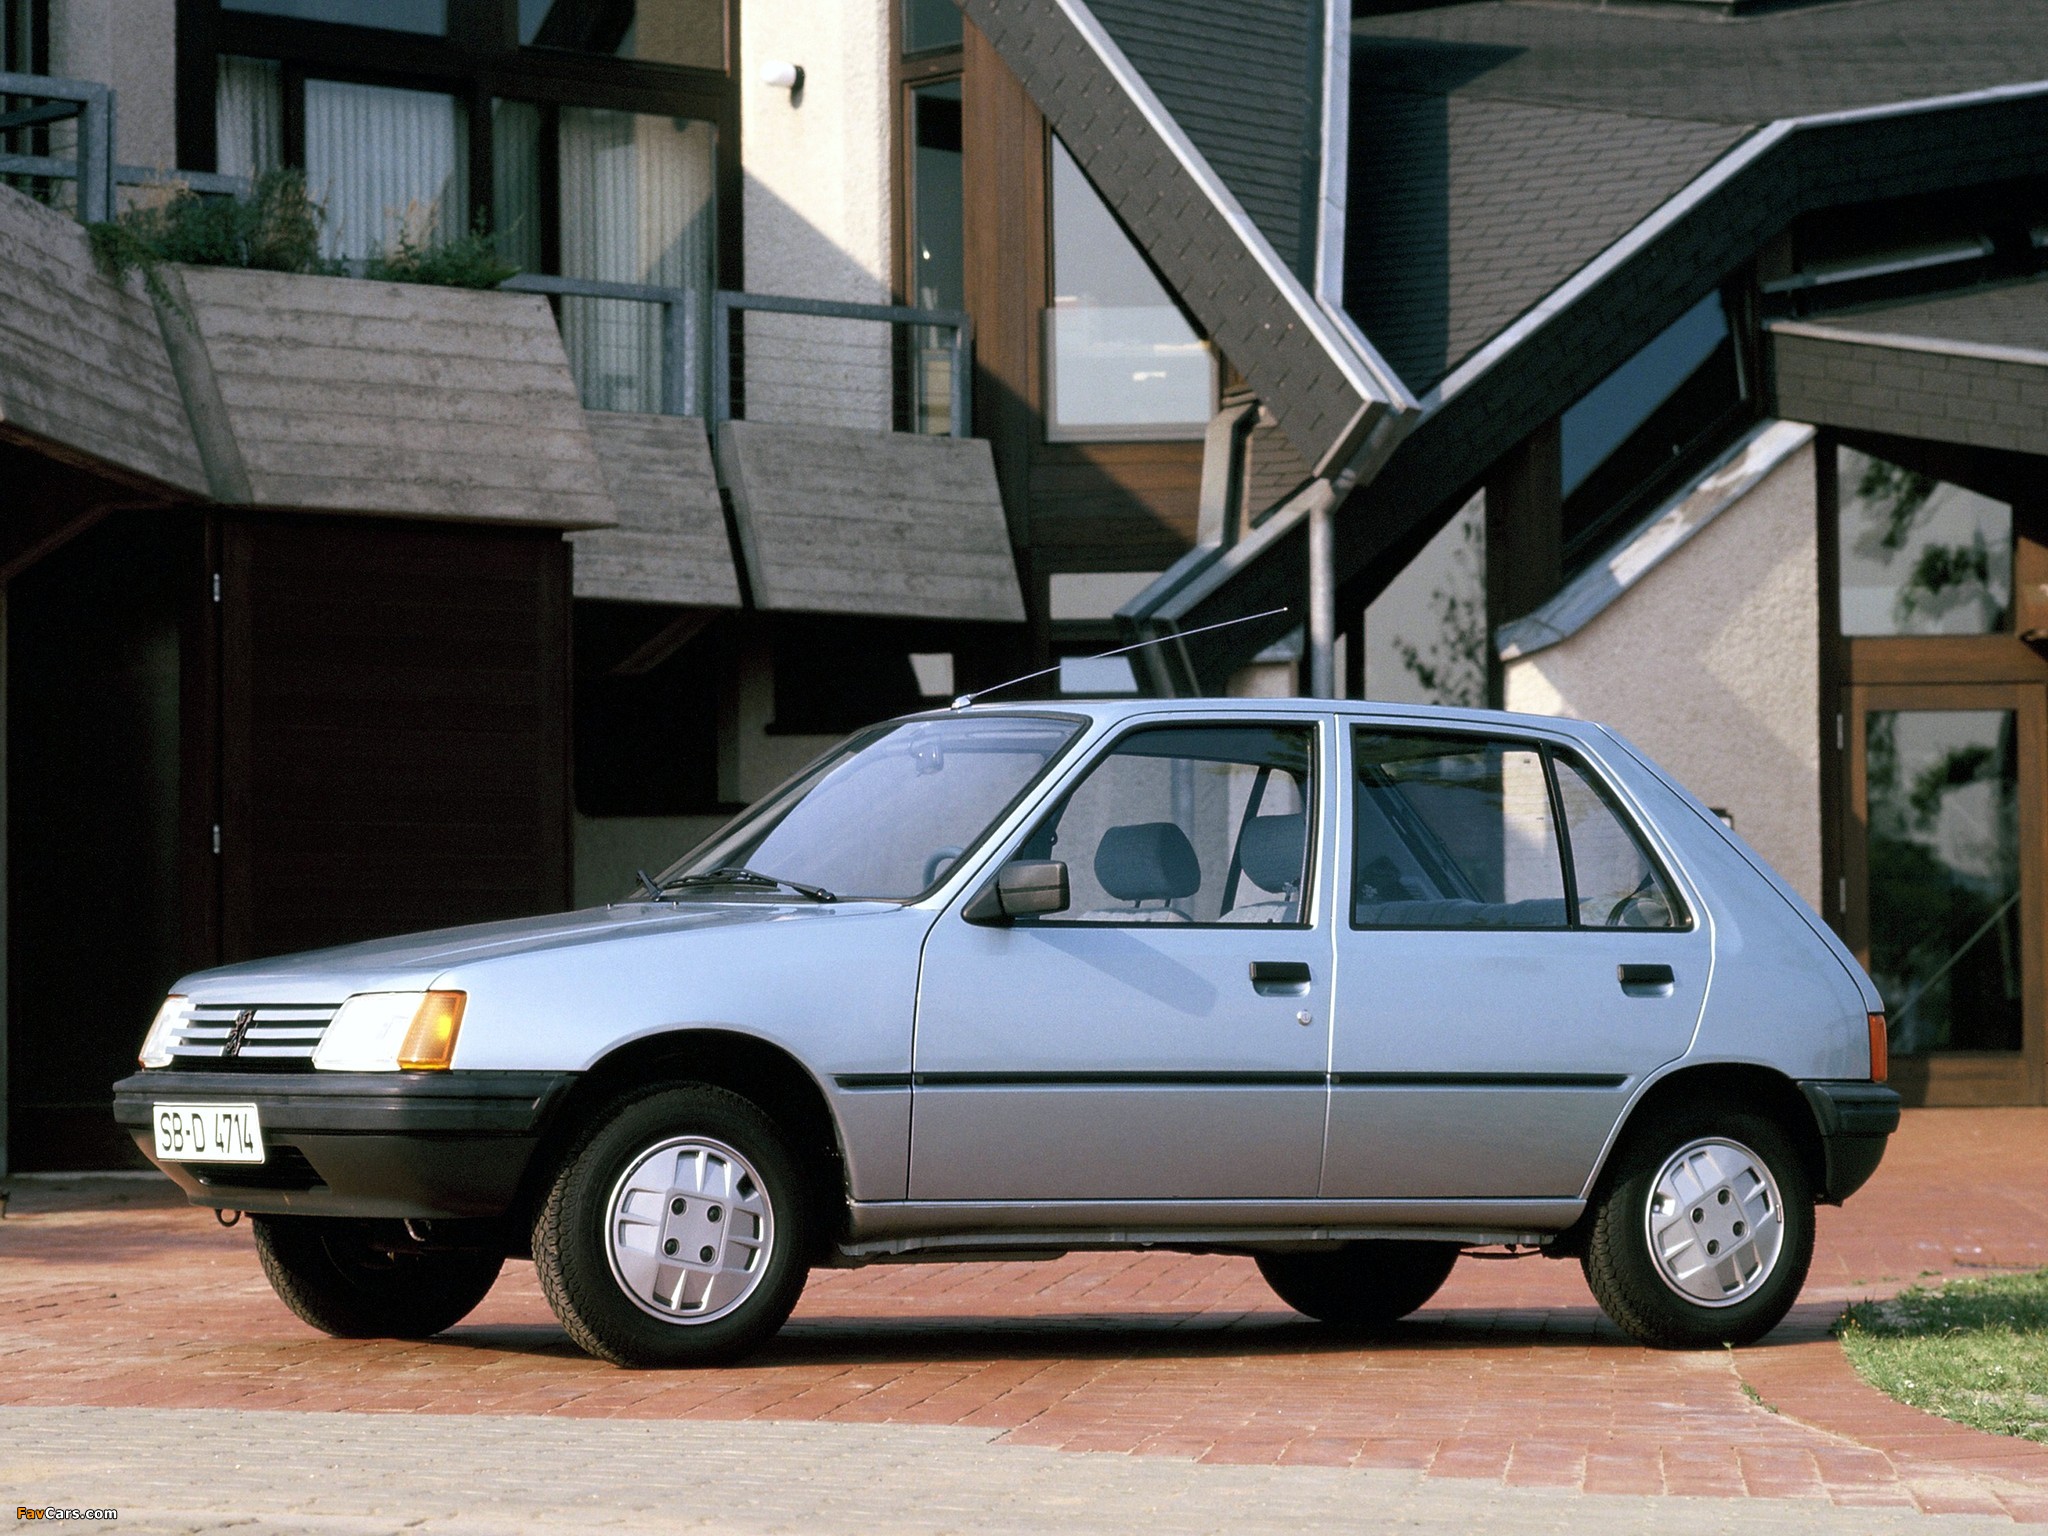 Пежо 98 год. Peugeot 205 5-Door. Peugeot 205 1983. Peugeot 205 1987. Peugeot 105.